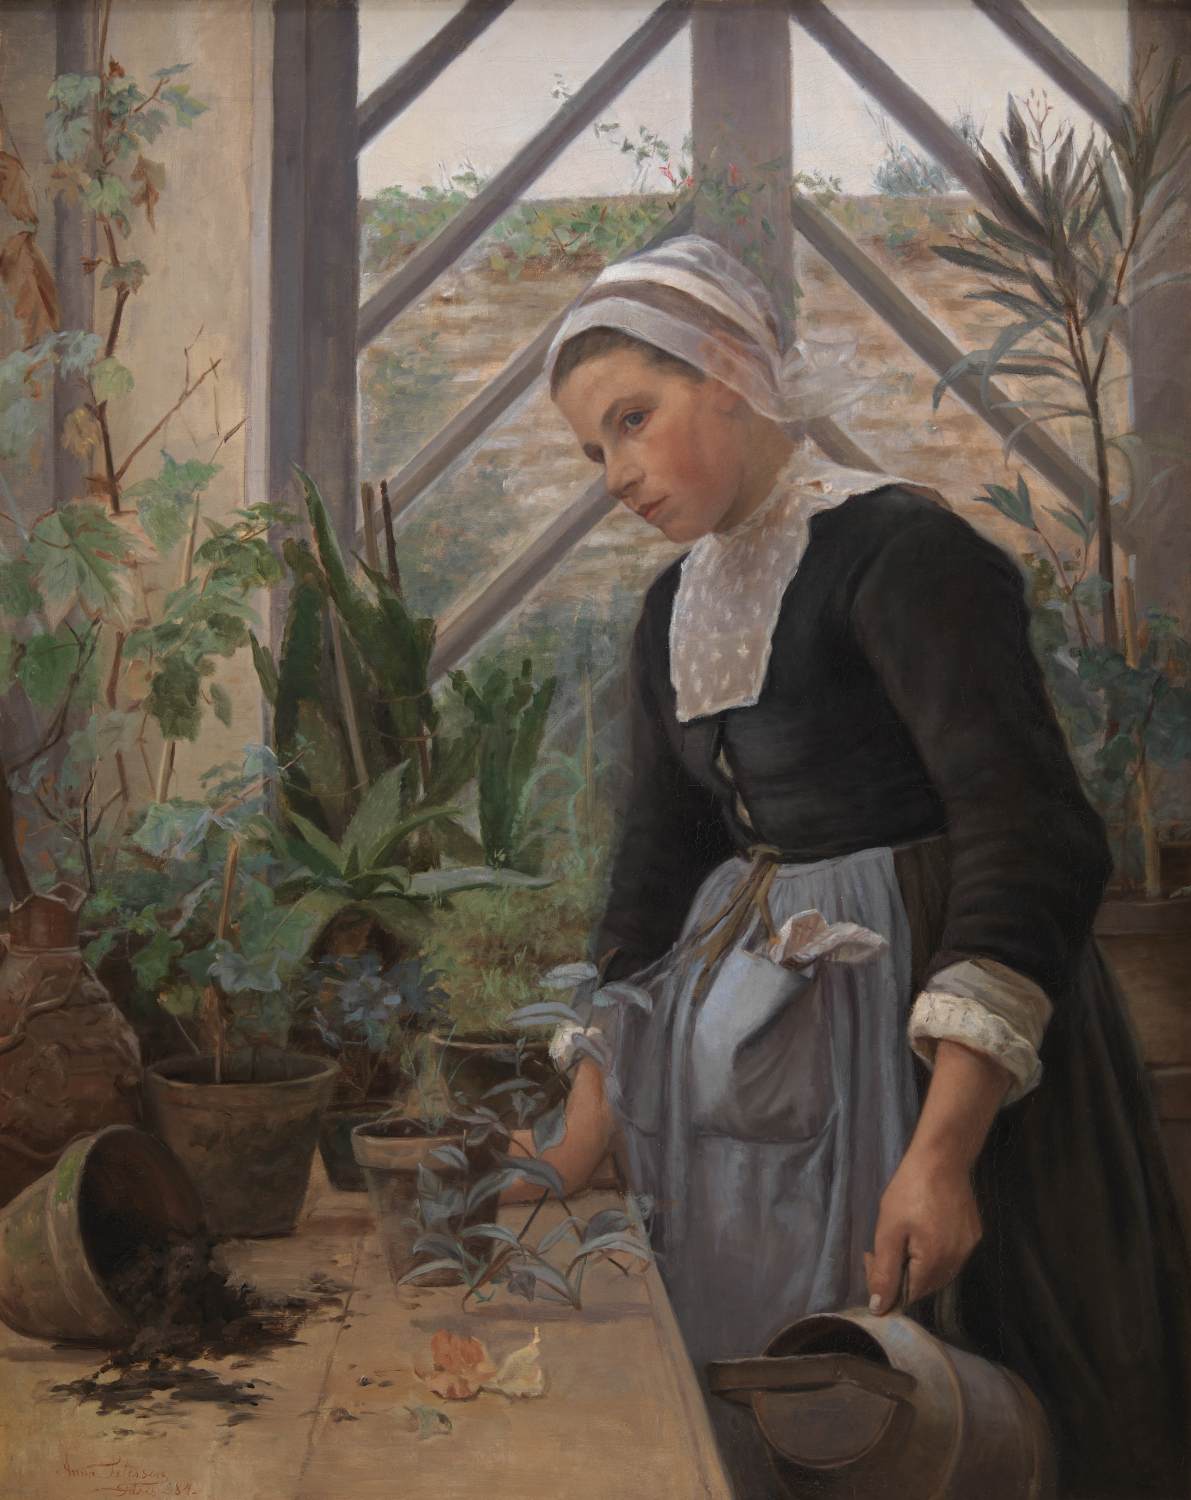 Breton pige, der tager sig af planter i drivhuset